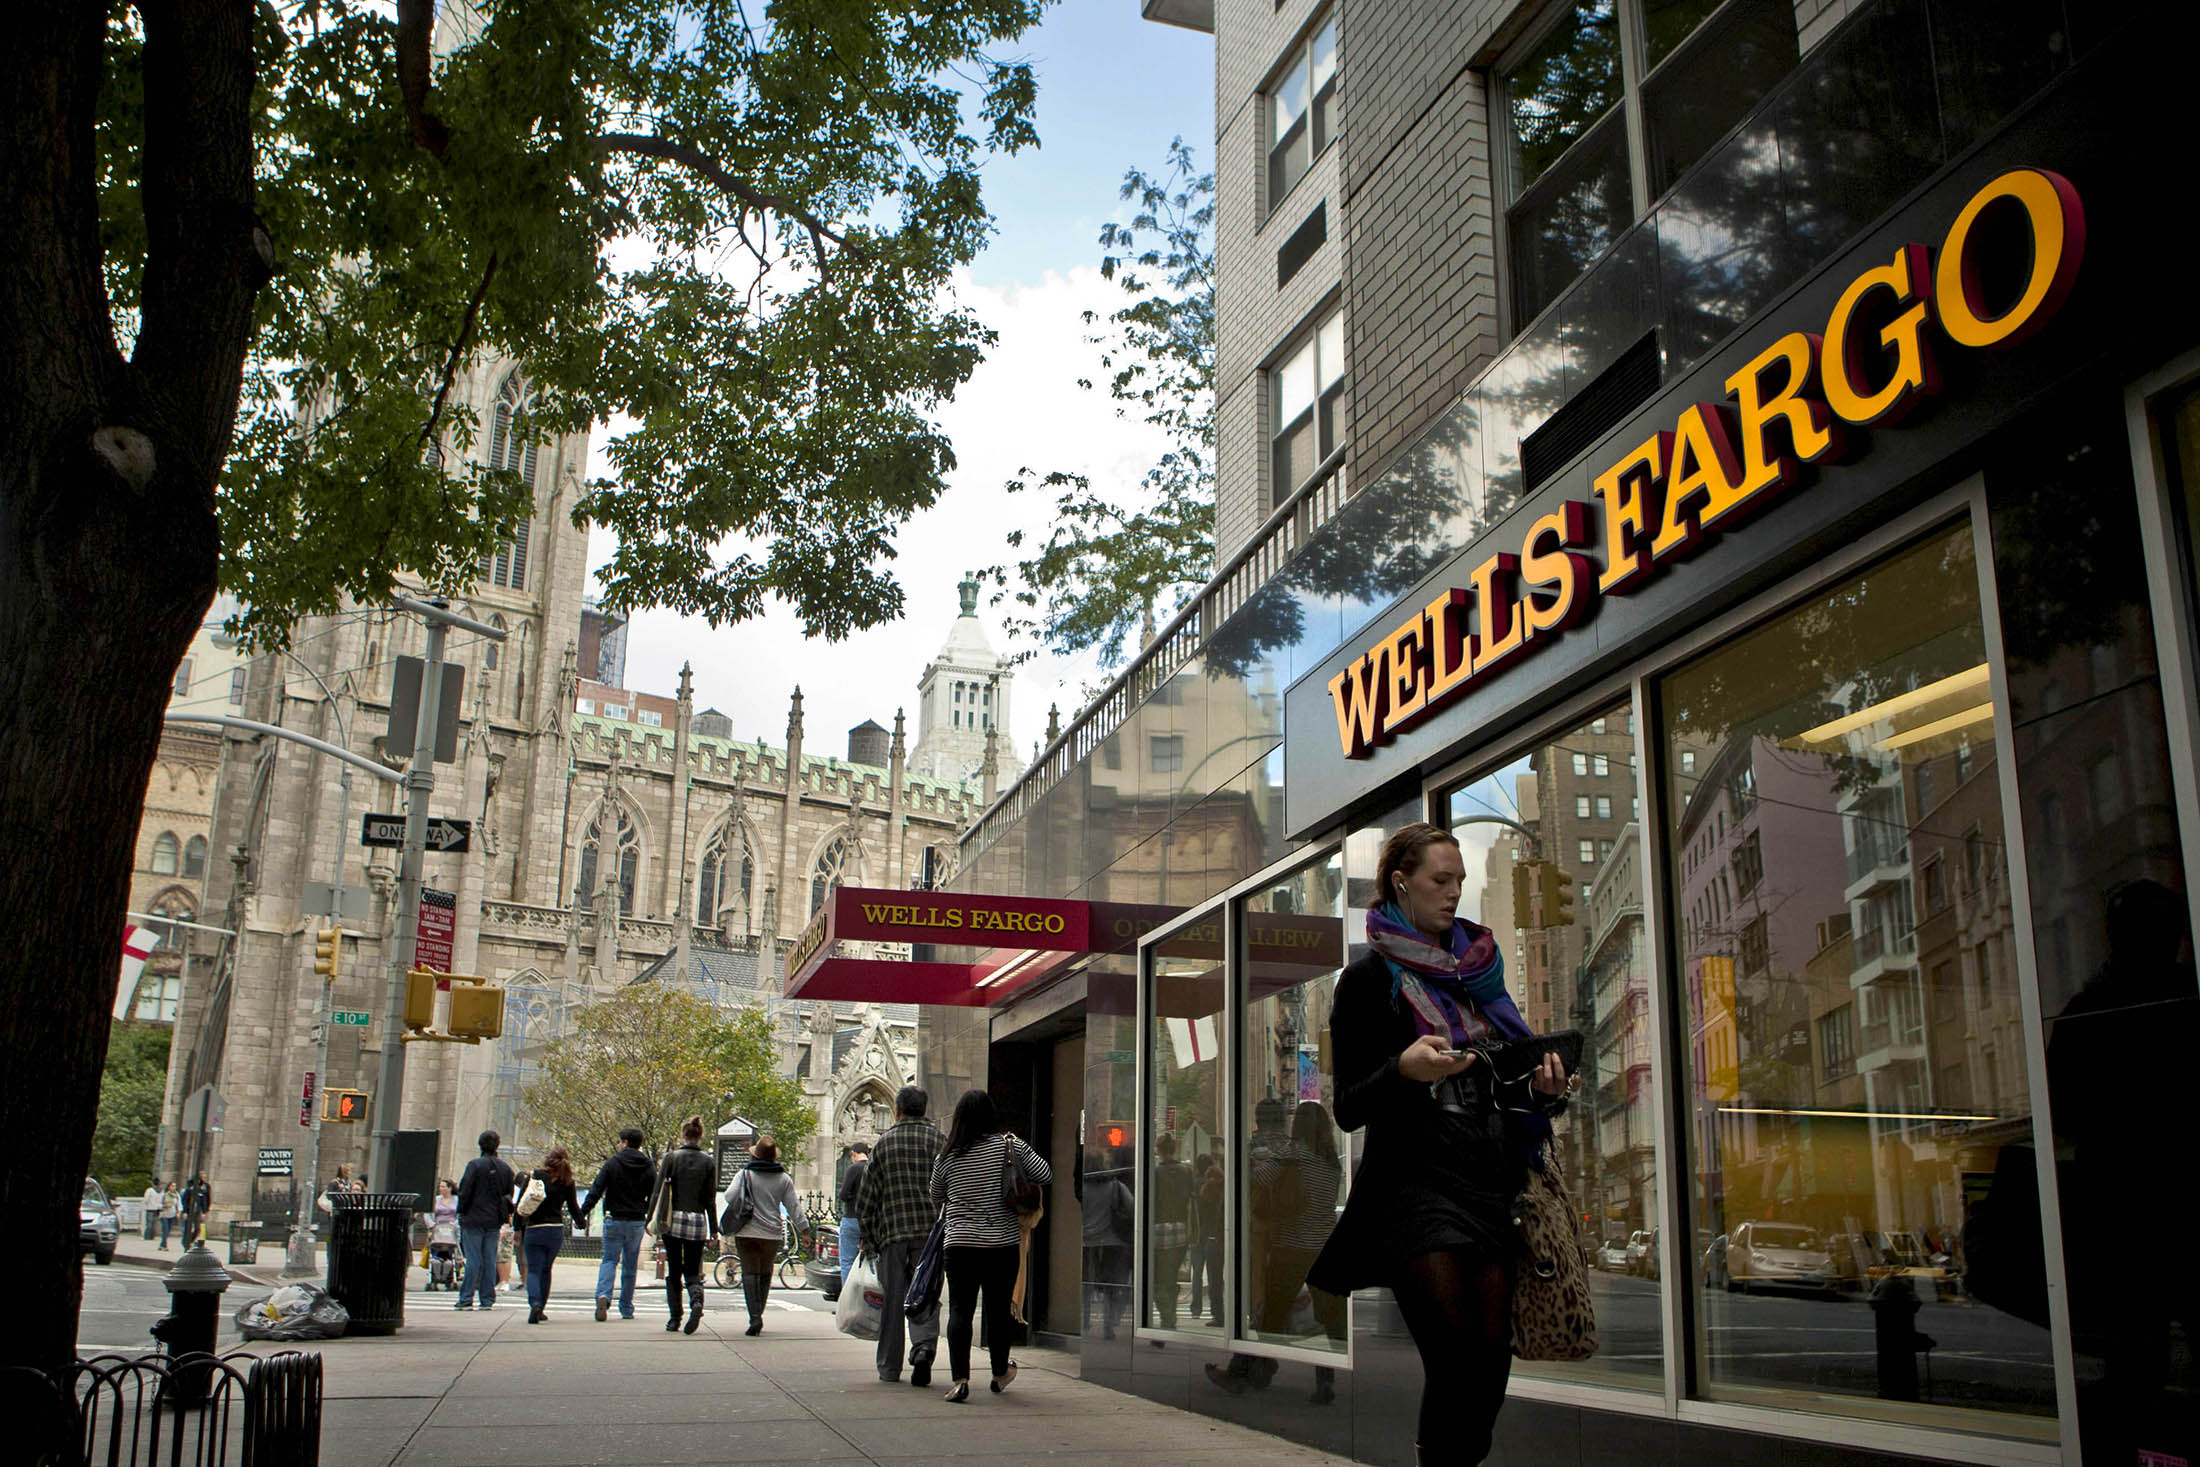 Pedestrians pass a Wells Fargo bank branch in New York.
